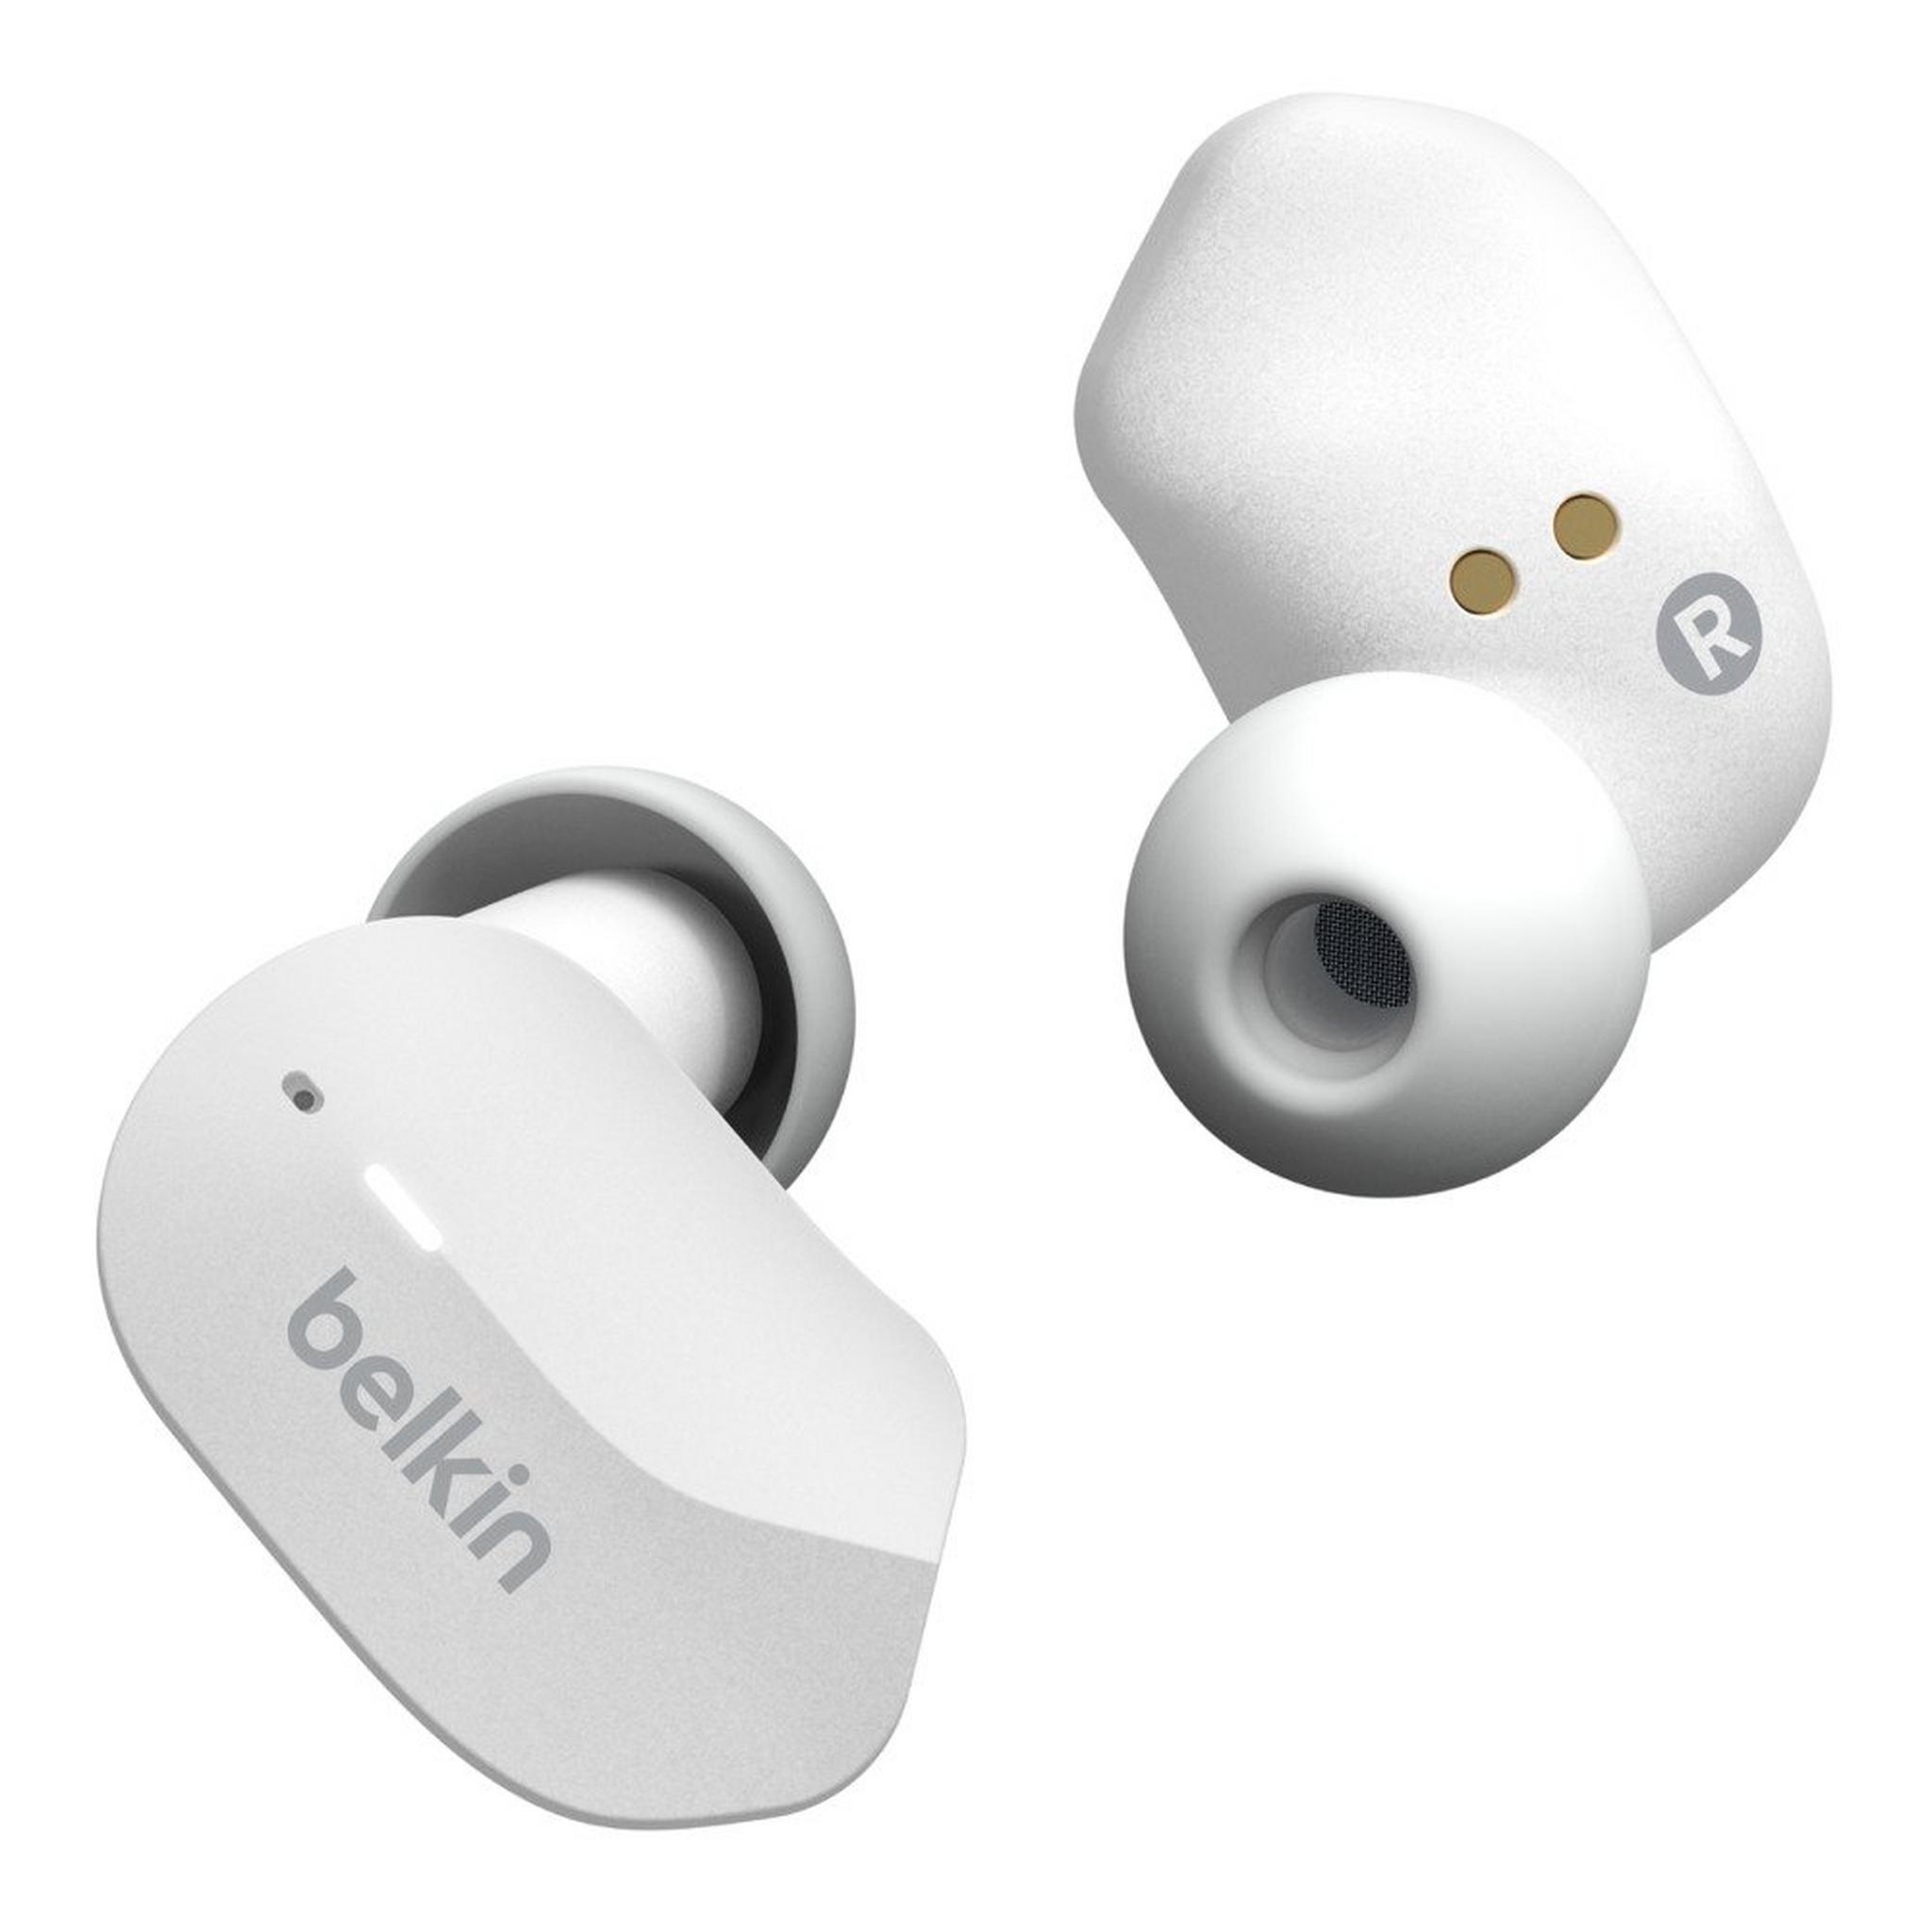 Belkin Soundform True Wireless Earbuds - white